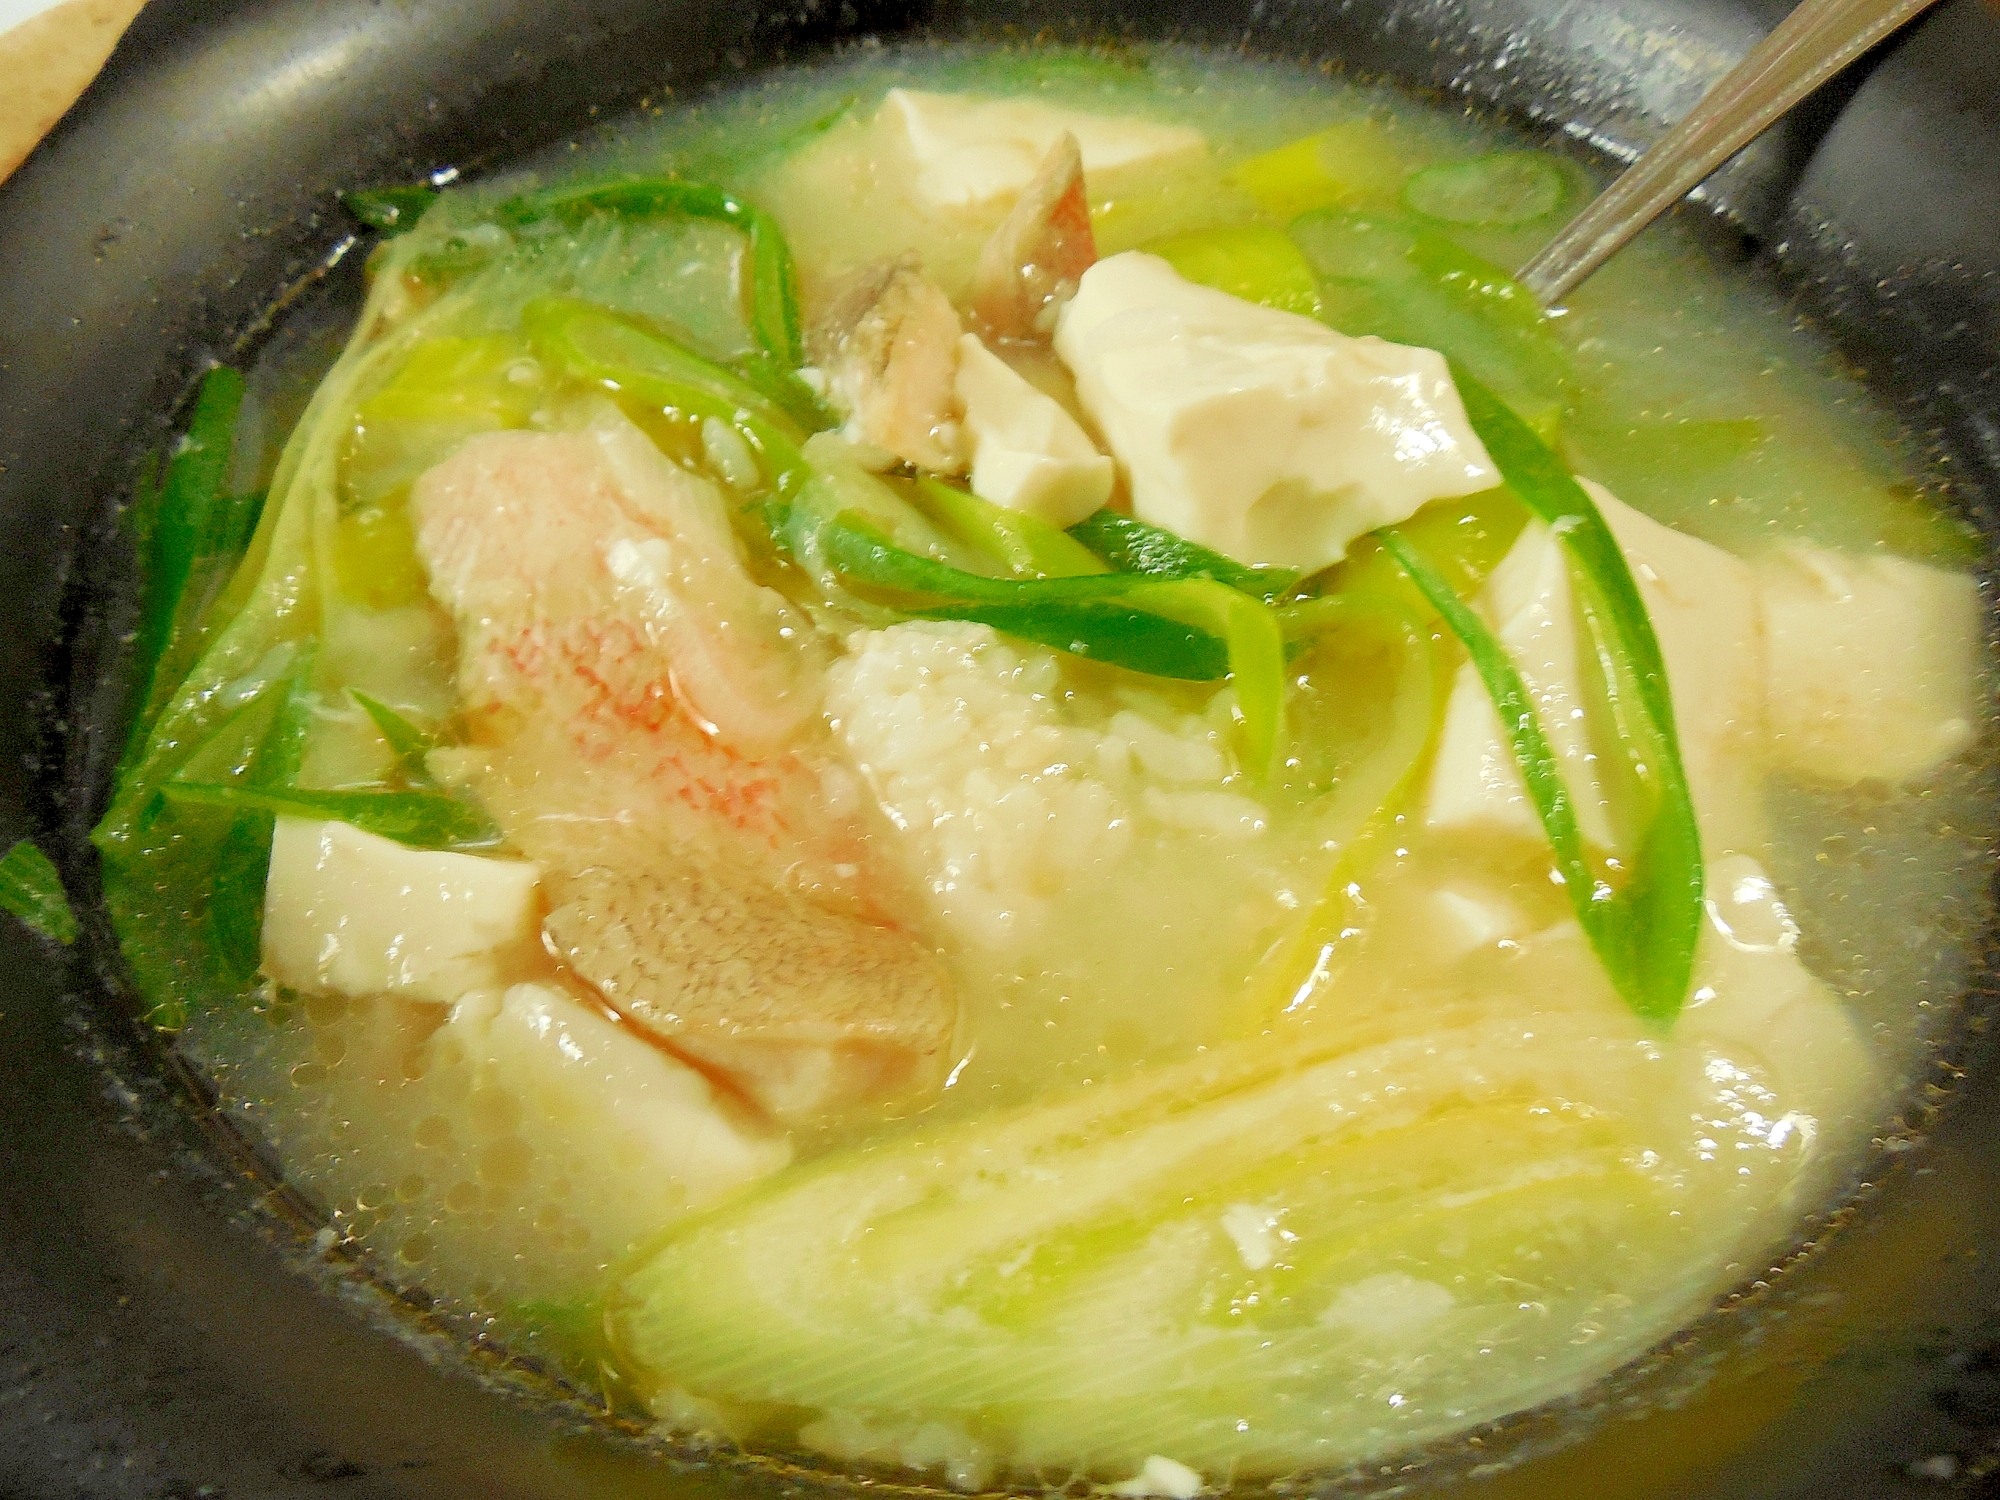 赤魚と豆腐の塩麹スープ雑炊